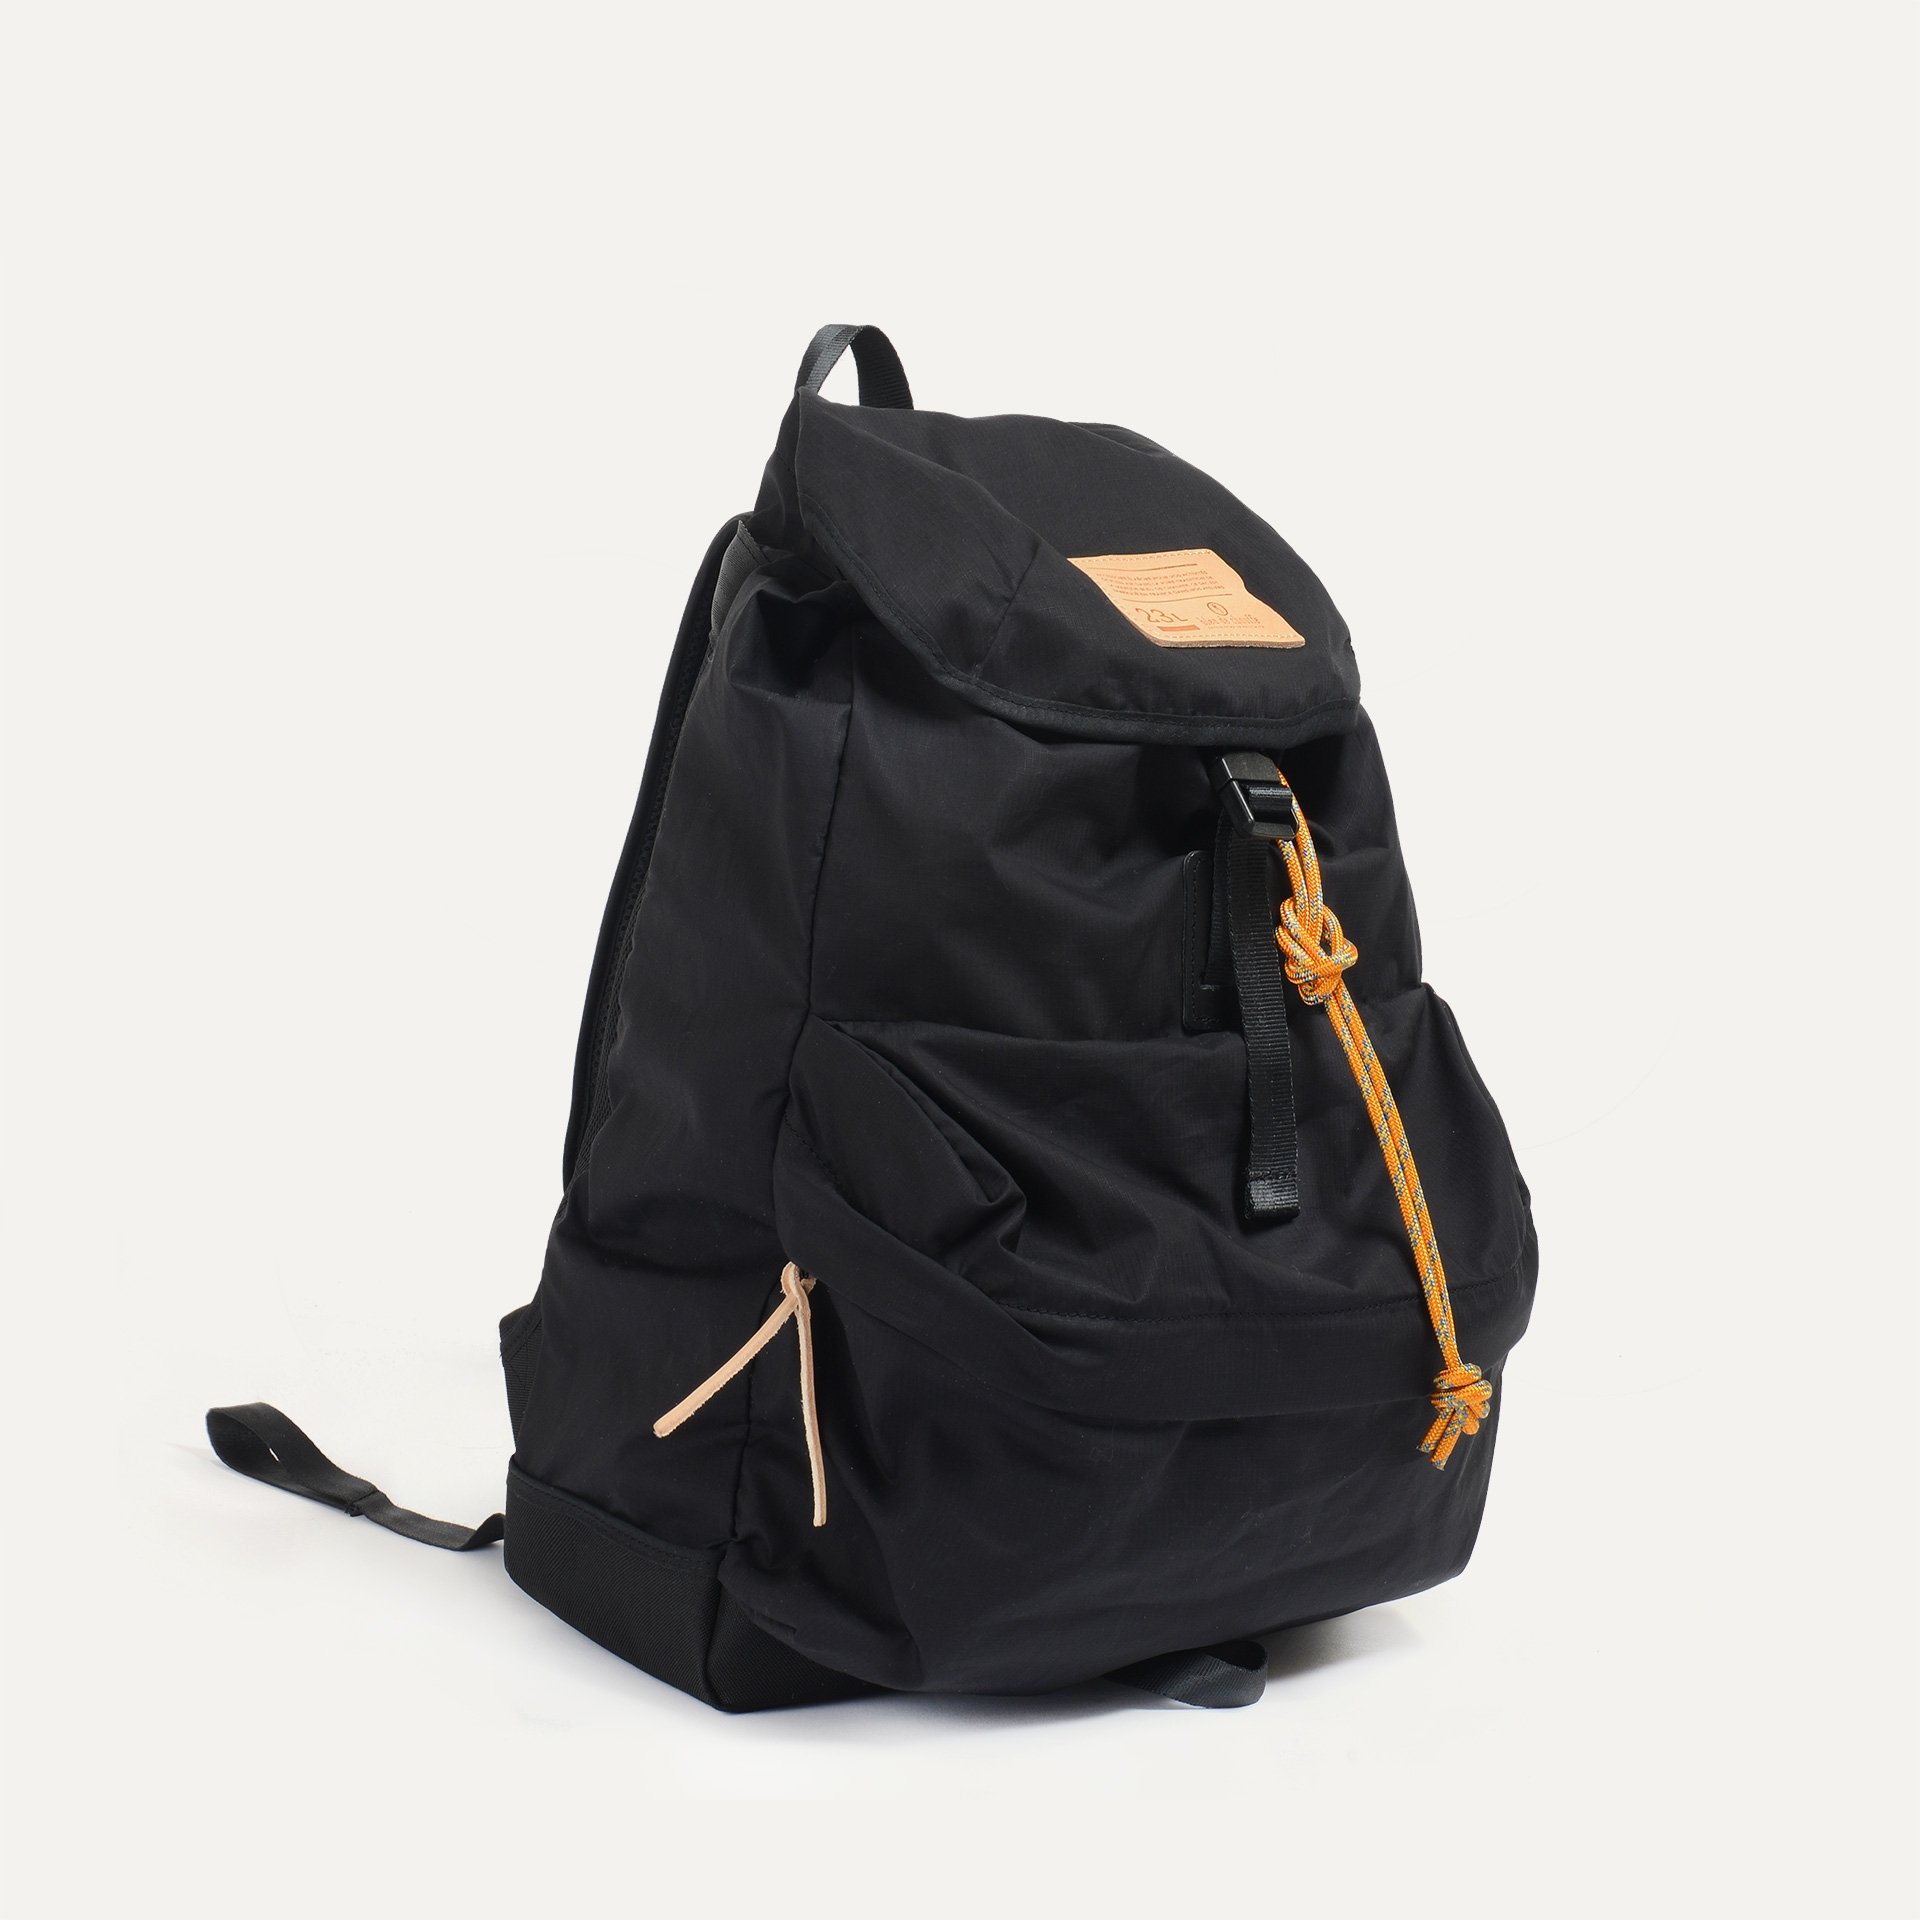 23L Bayou Backpack - Black (image n°2)